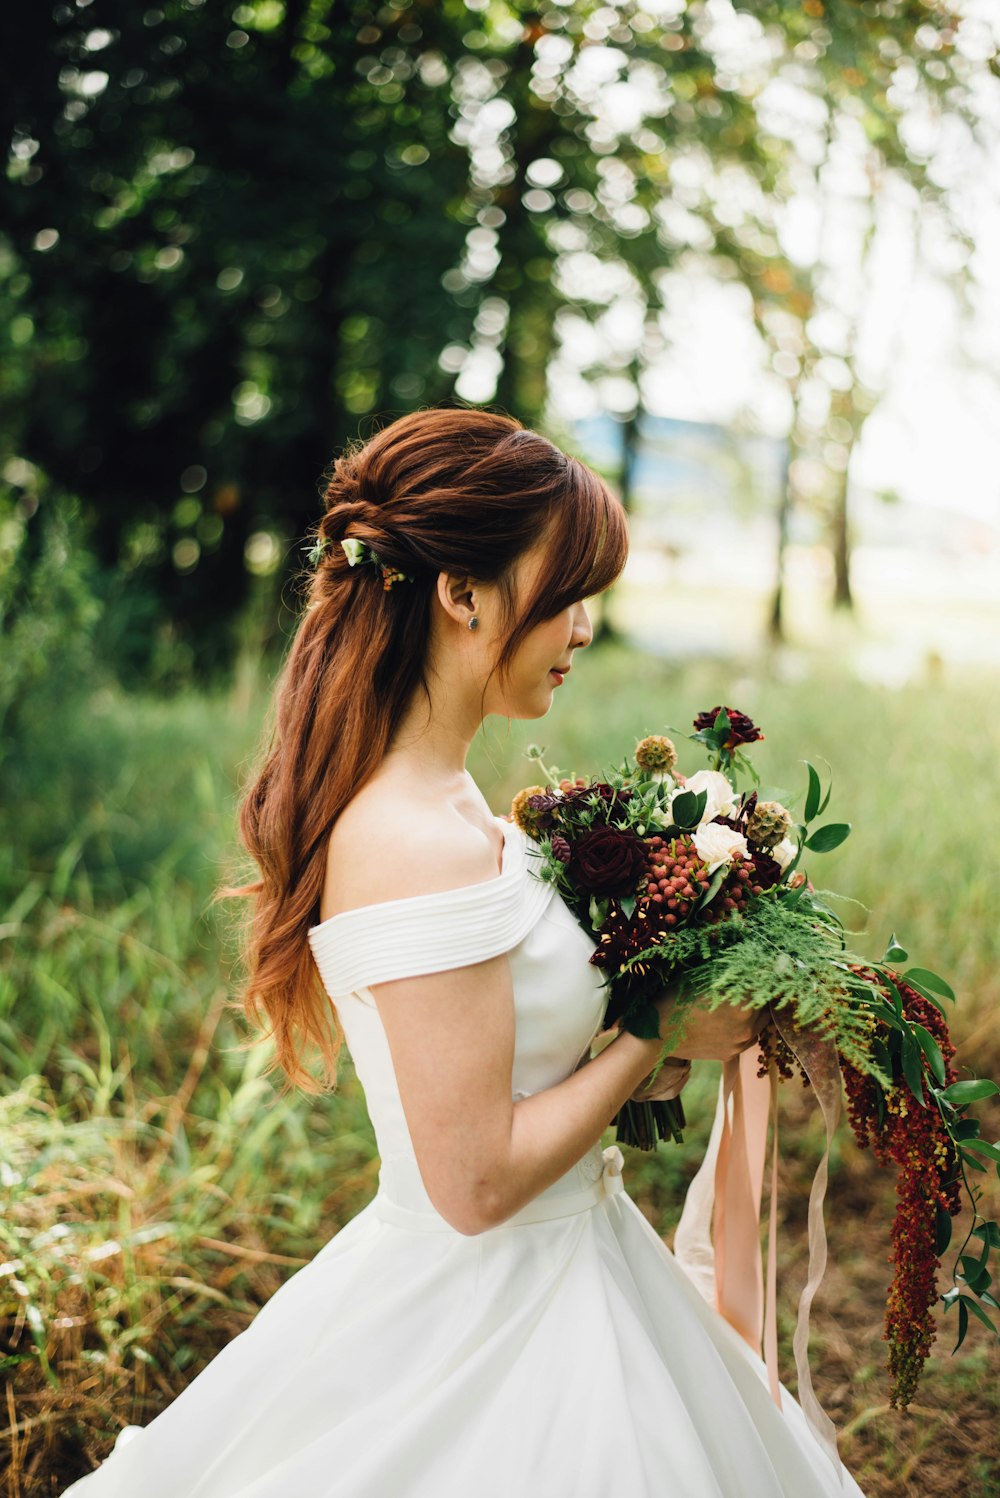 donna che indossa abito da sposa bianco con spalle scoperte che indossa un fiore dai petali bianchi